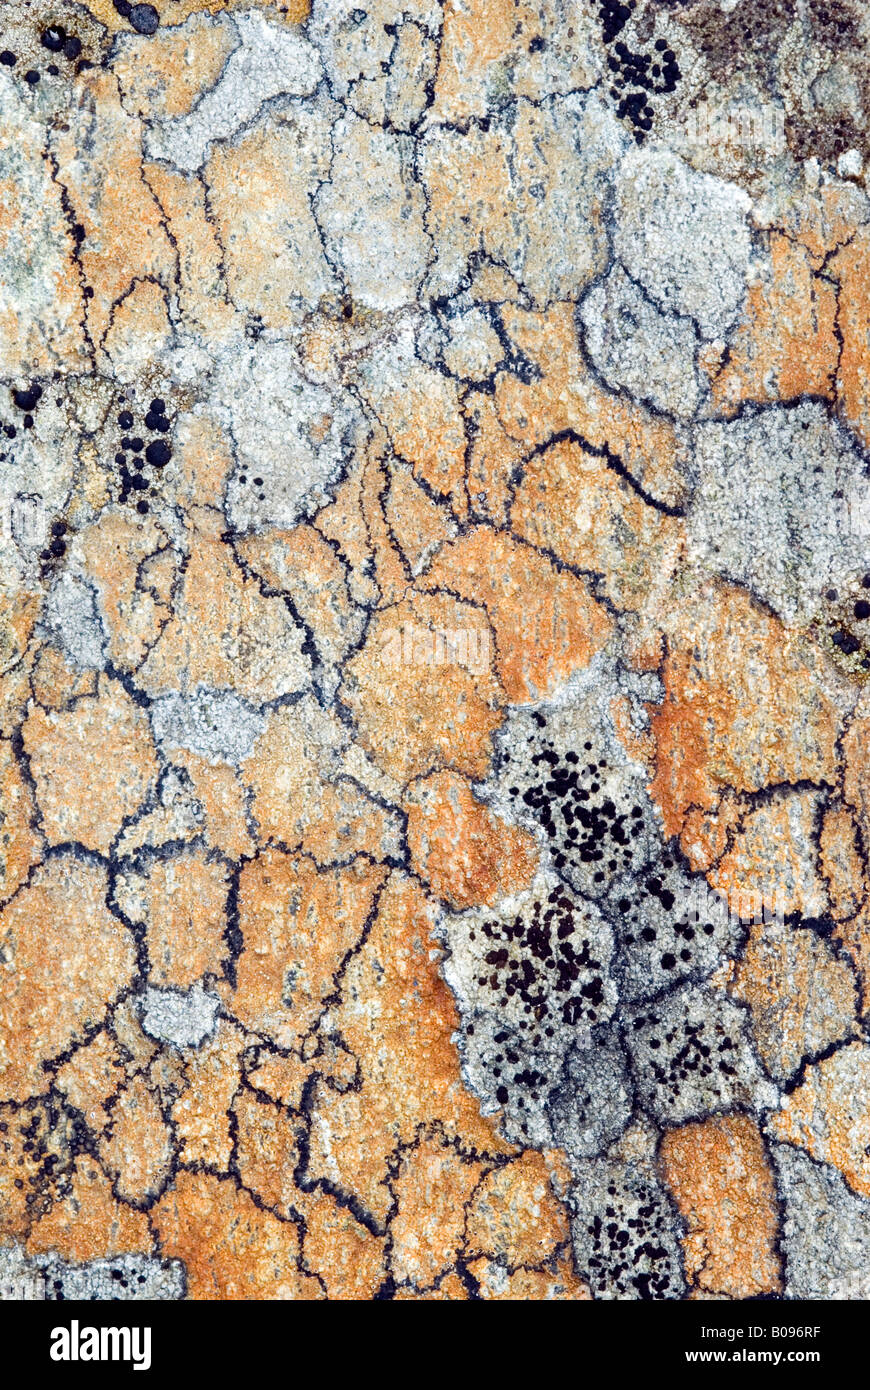 Crustose Lichen, Oberthauern, Salzburg, Austria Stock Photo